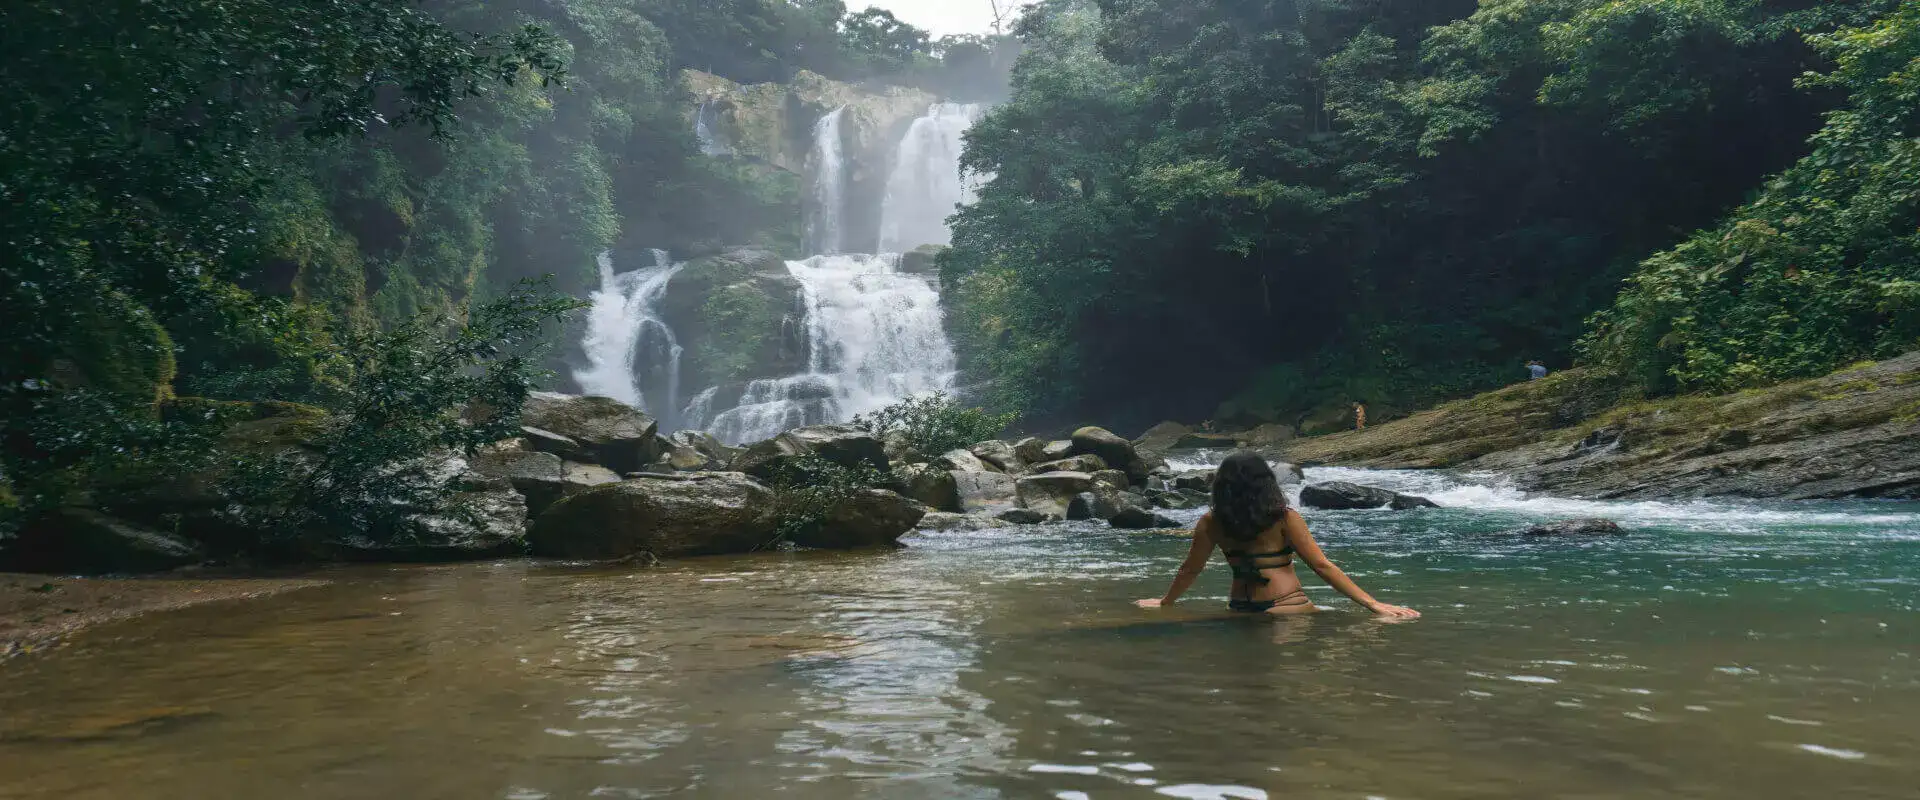 Nauyaca Waterfalls Tour in Manuel Antonio | Costa Rica